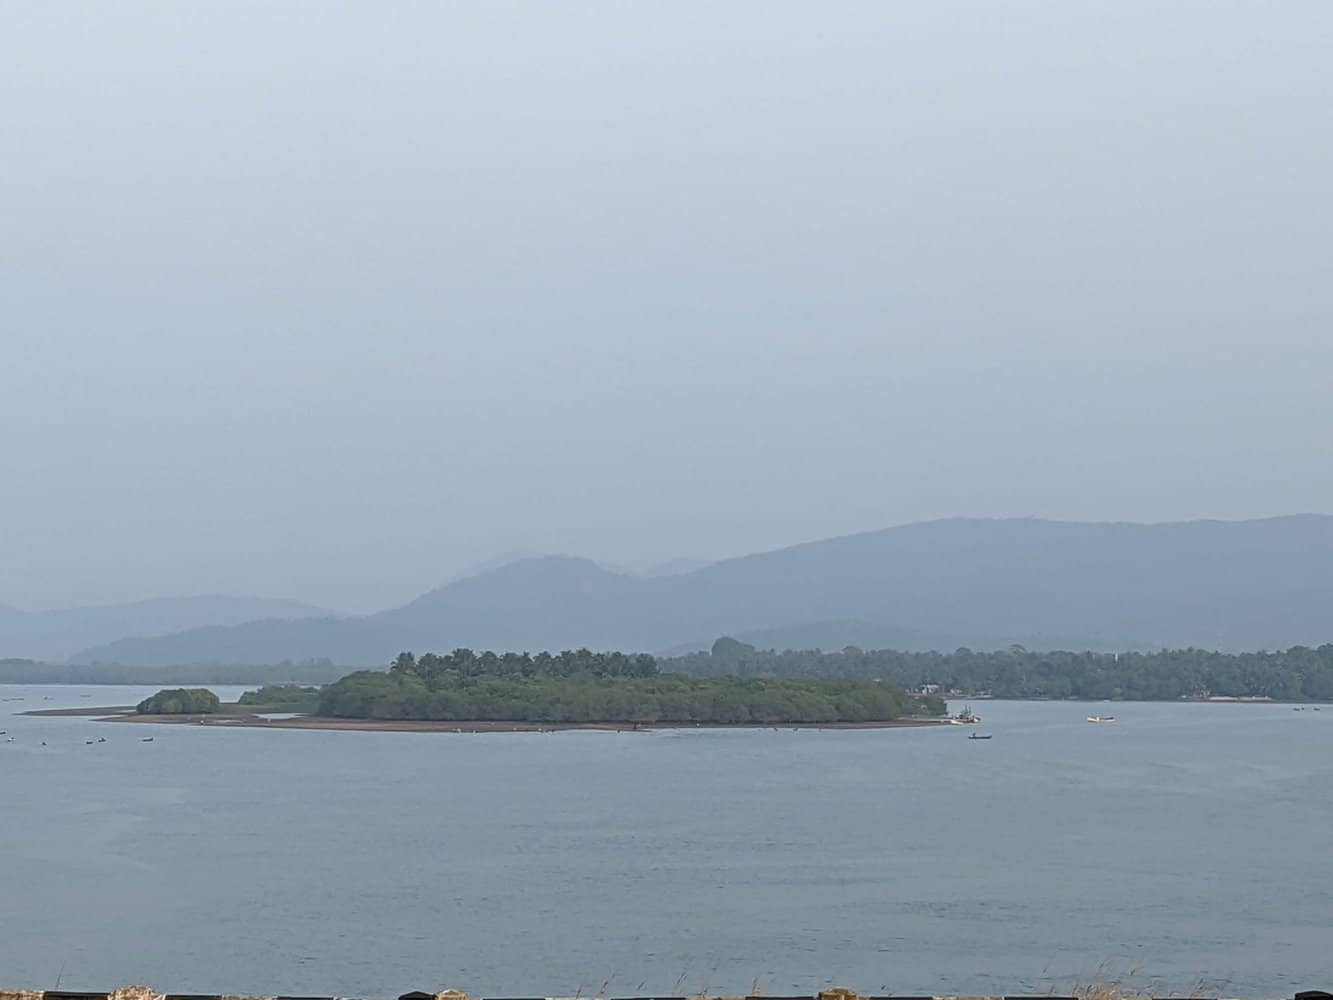 View from Kali river bridge, Karwar, Karnataka